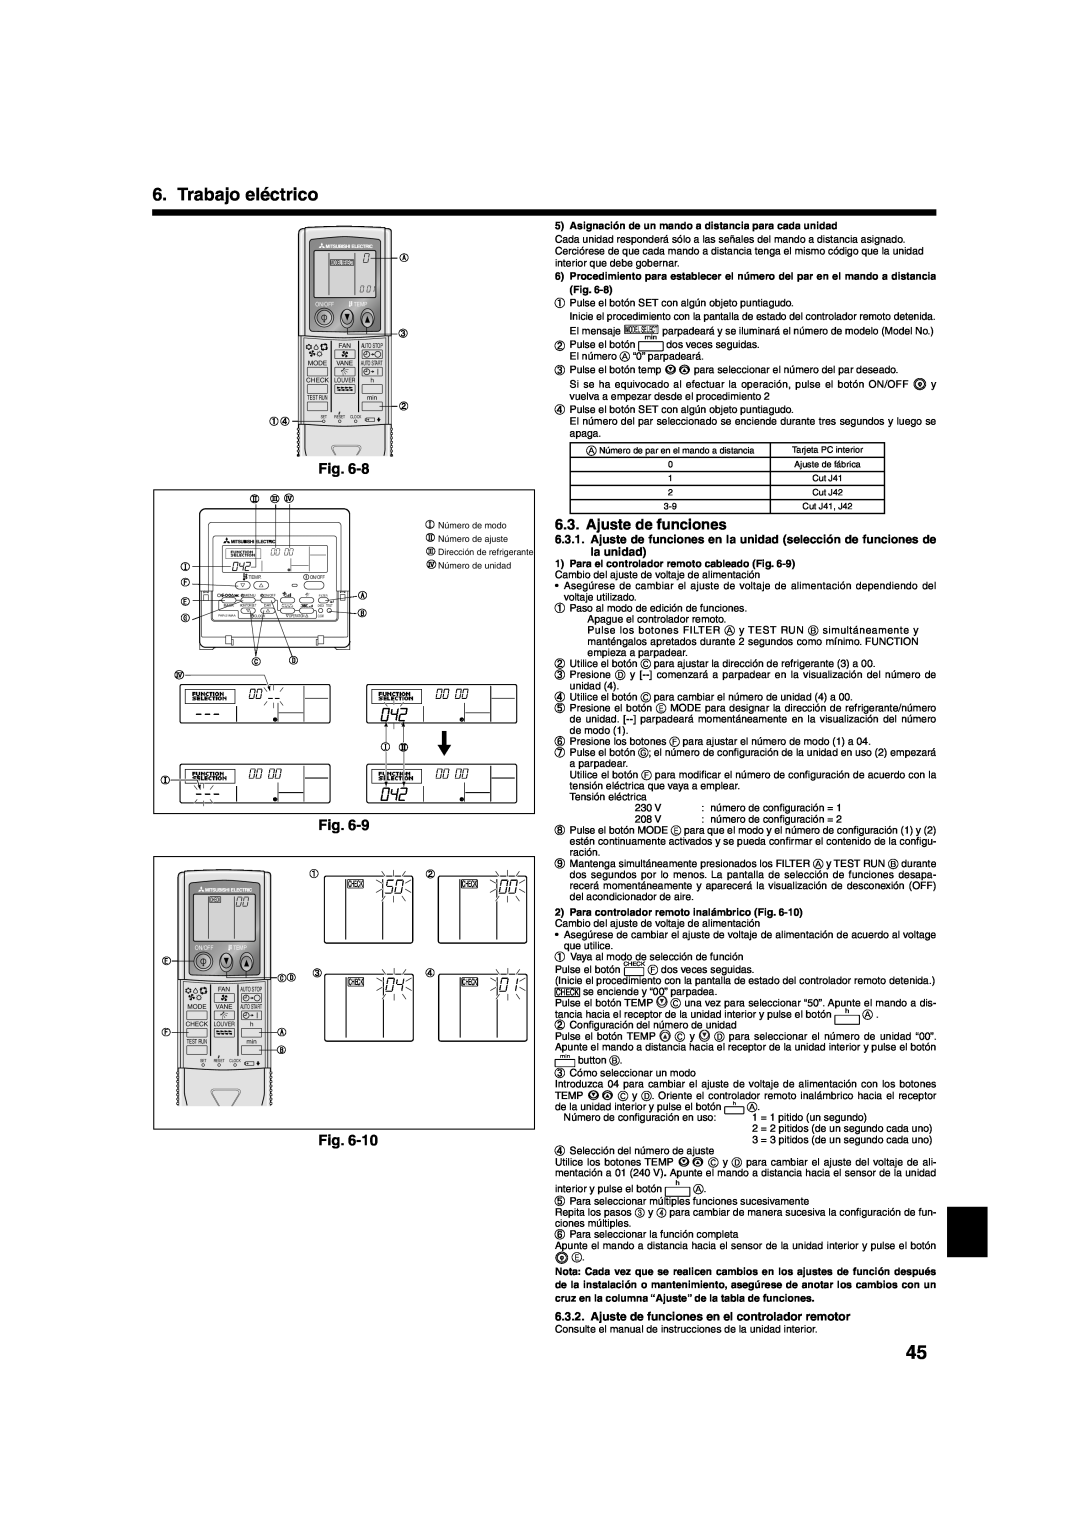 Mitsumi electronic PLA-ABA installation manual Ajuste de funciones, Trabajo eléctrico 